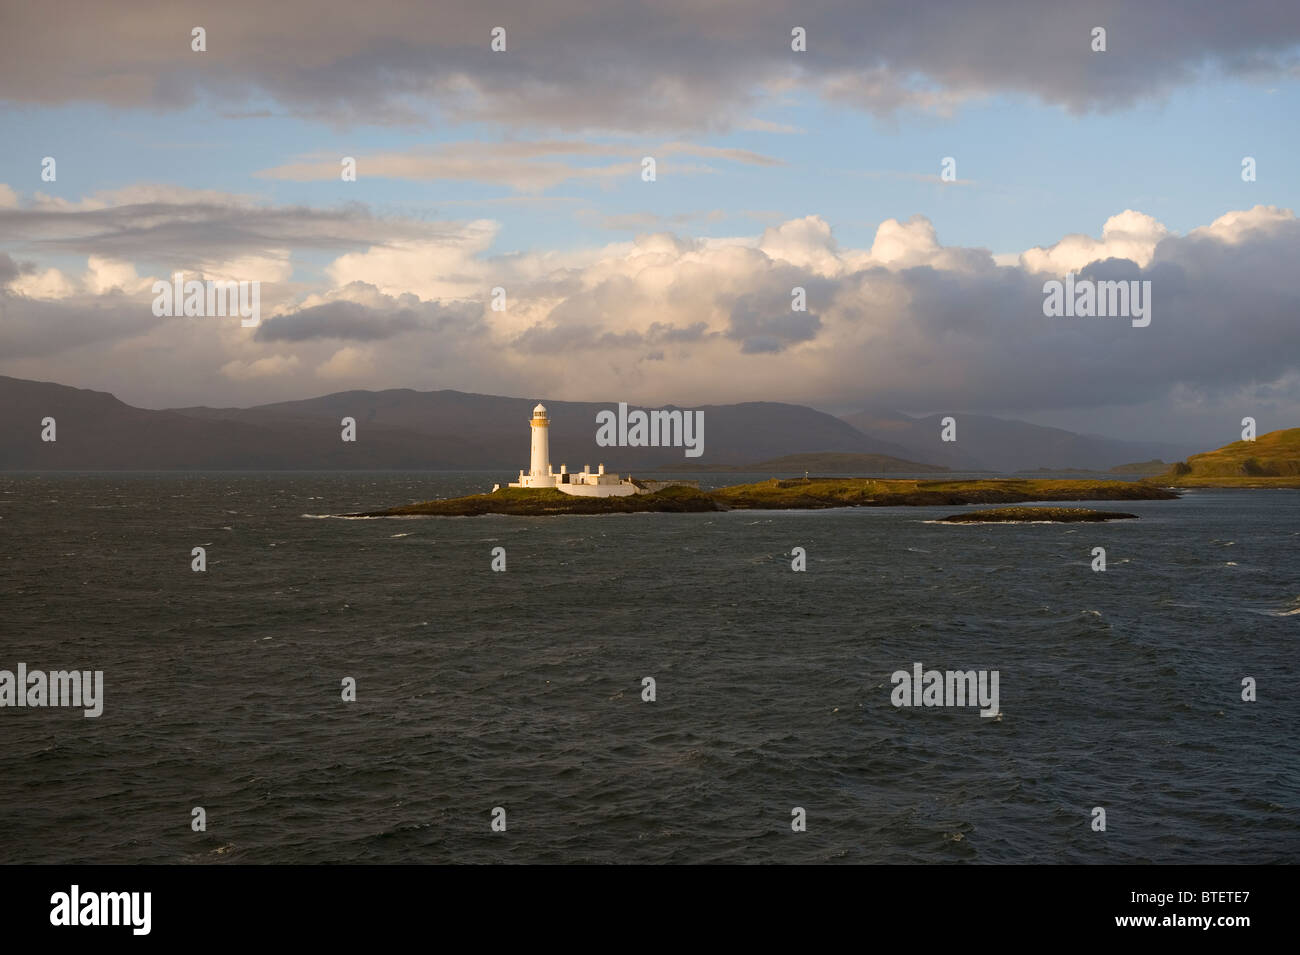 Île de Mull, en Ecosse. Phare de Lismore sur l'île de Lismore construite par Robert Stevenson en 1833 protège la navigation dans le Banque D'Images